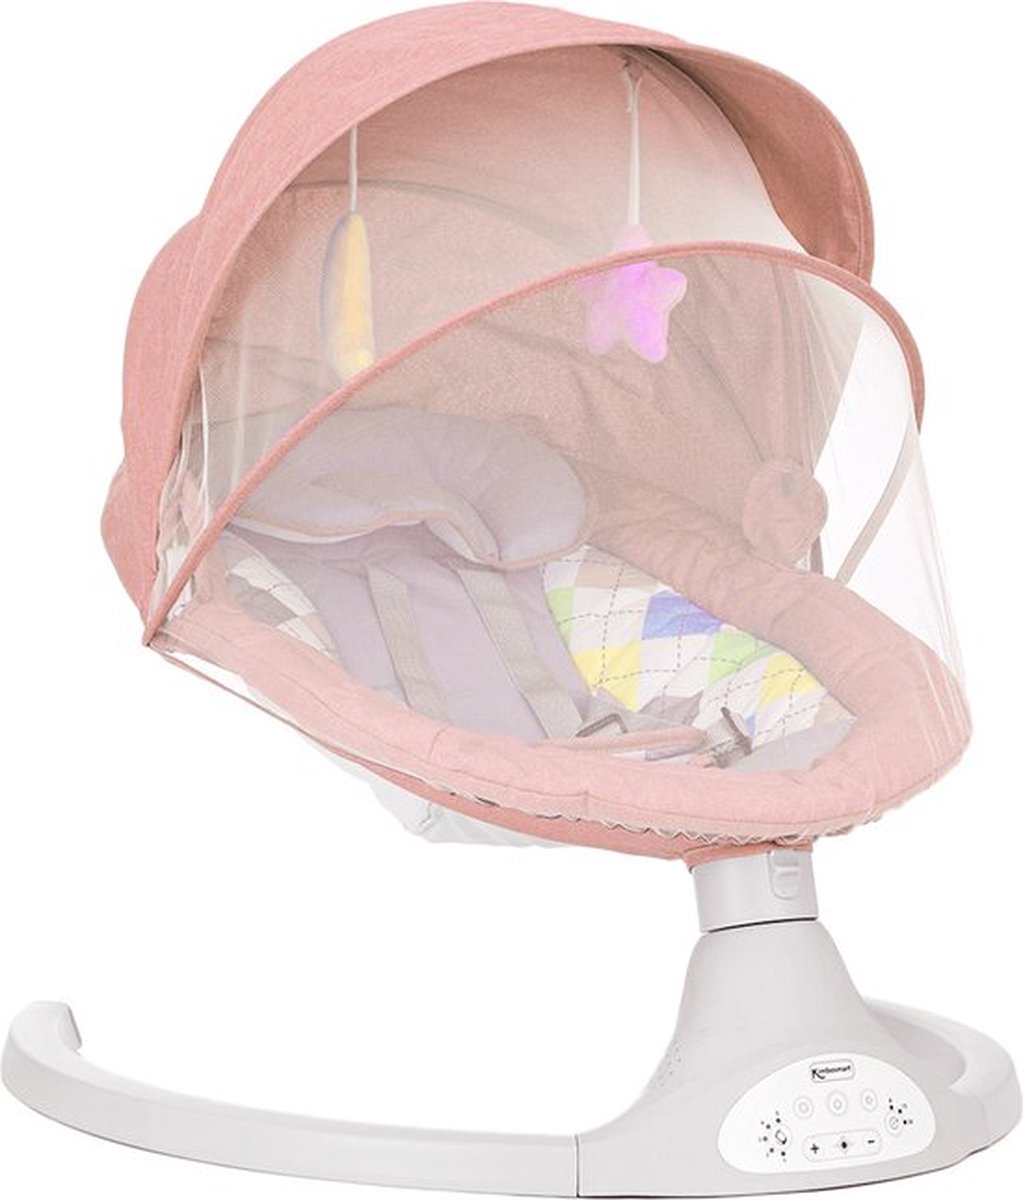 Elektrische Wipstoel - Wipstoel Baby Elektrisch - - Elektrische Babyschommel - Wipstoel Elektrisch - - Wipstoel Baby - Baby Schommel - Ingebouwde Speaker - Incl. Afstandsbediening & Klamboe - Roze - Little Plaza